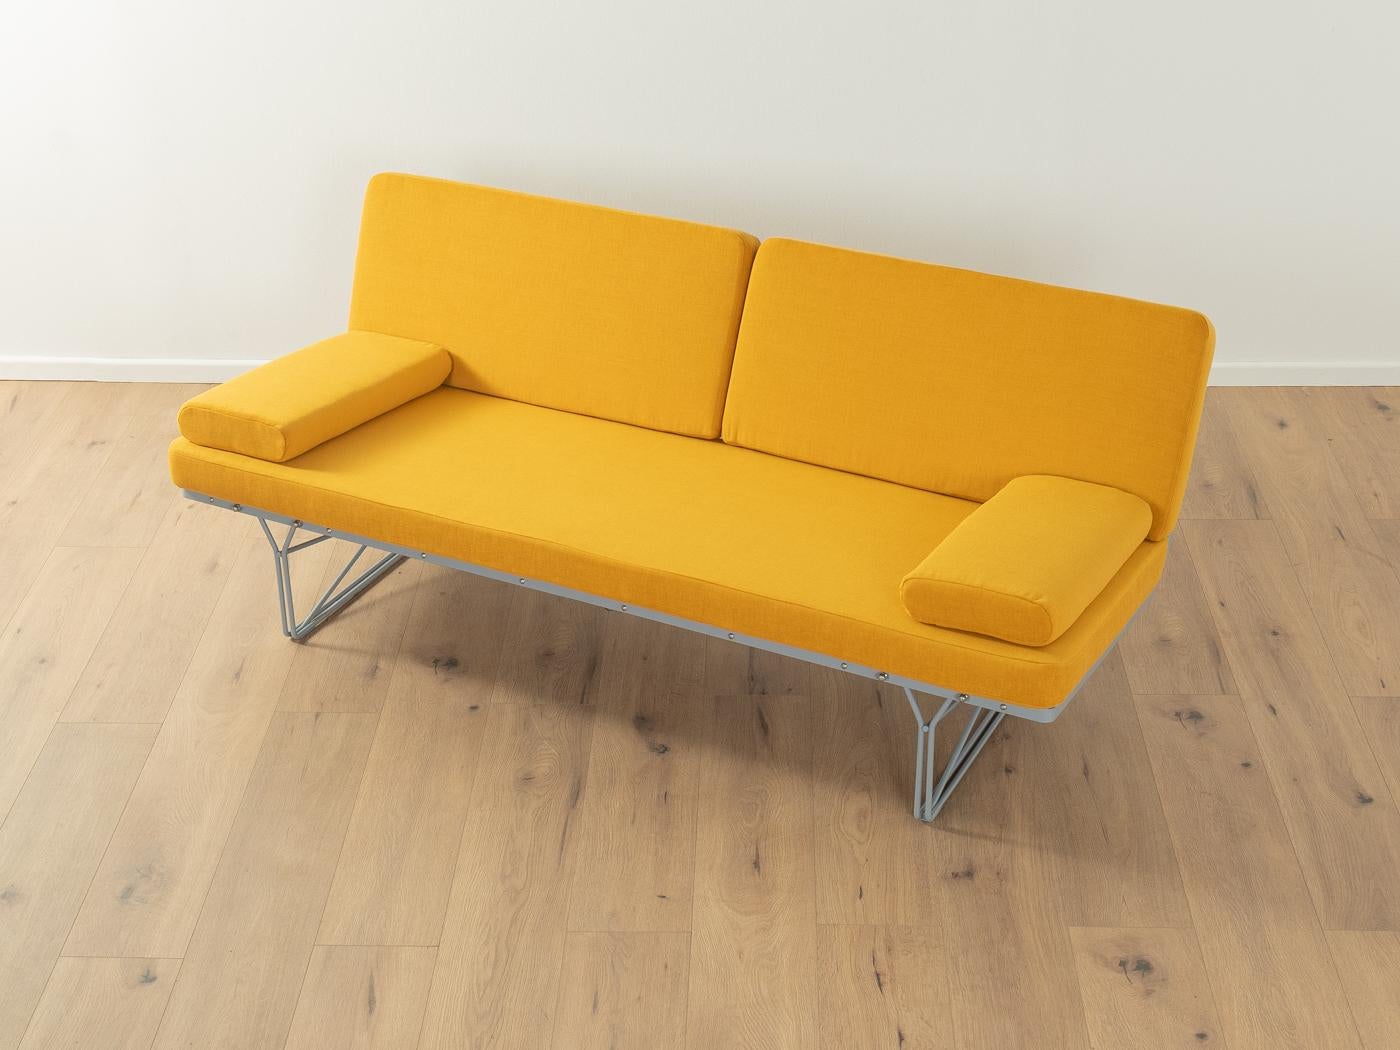 Filigranes Moment-Sofa von Niels Gammelgaard für Ikea aus den 1980er Jahren mit einem grau lackierten Stahlrahmen. Das Sofa wurde neu gepolstert und mit einem hochwertigen Stoff in Gelb bezogen.
Qualitätsmerkmale:

    sehr gute Verarbeitung
   